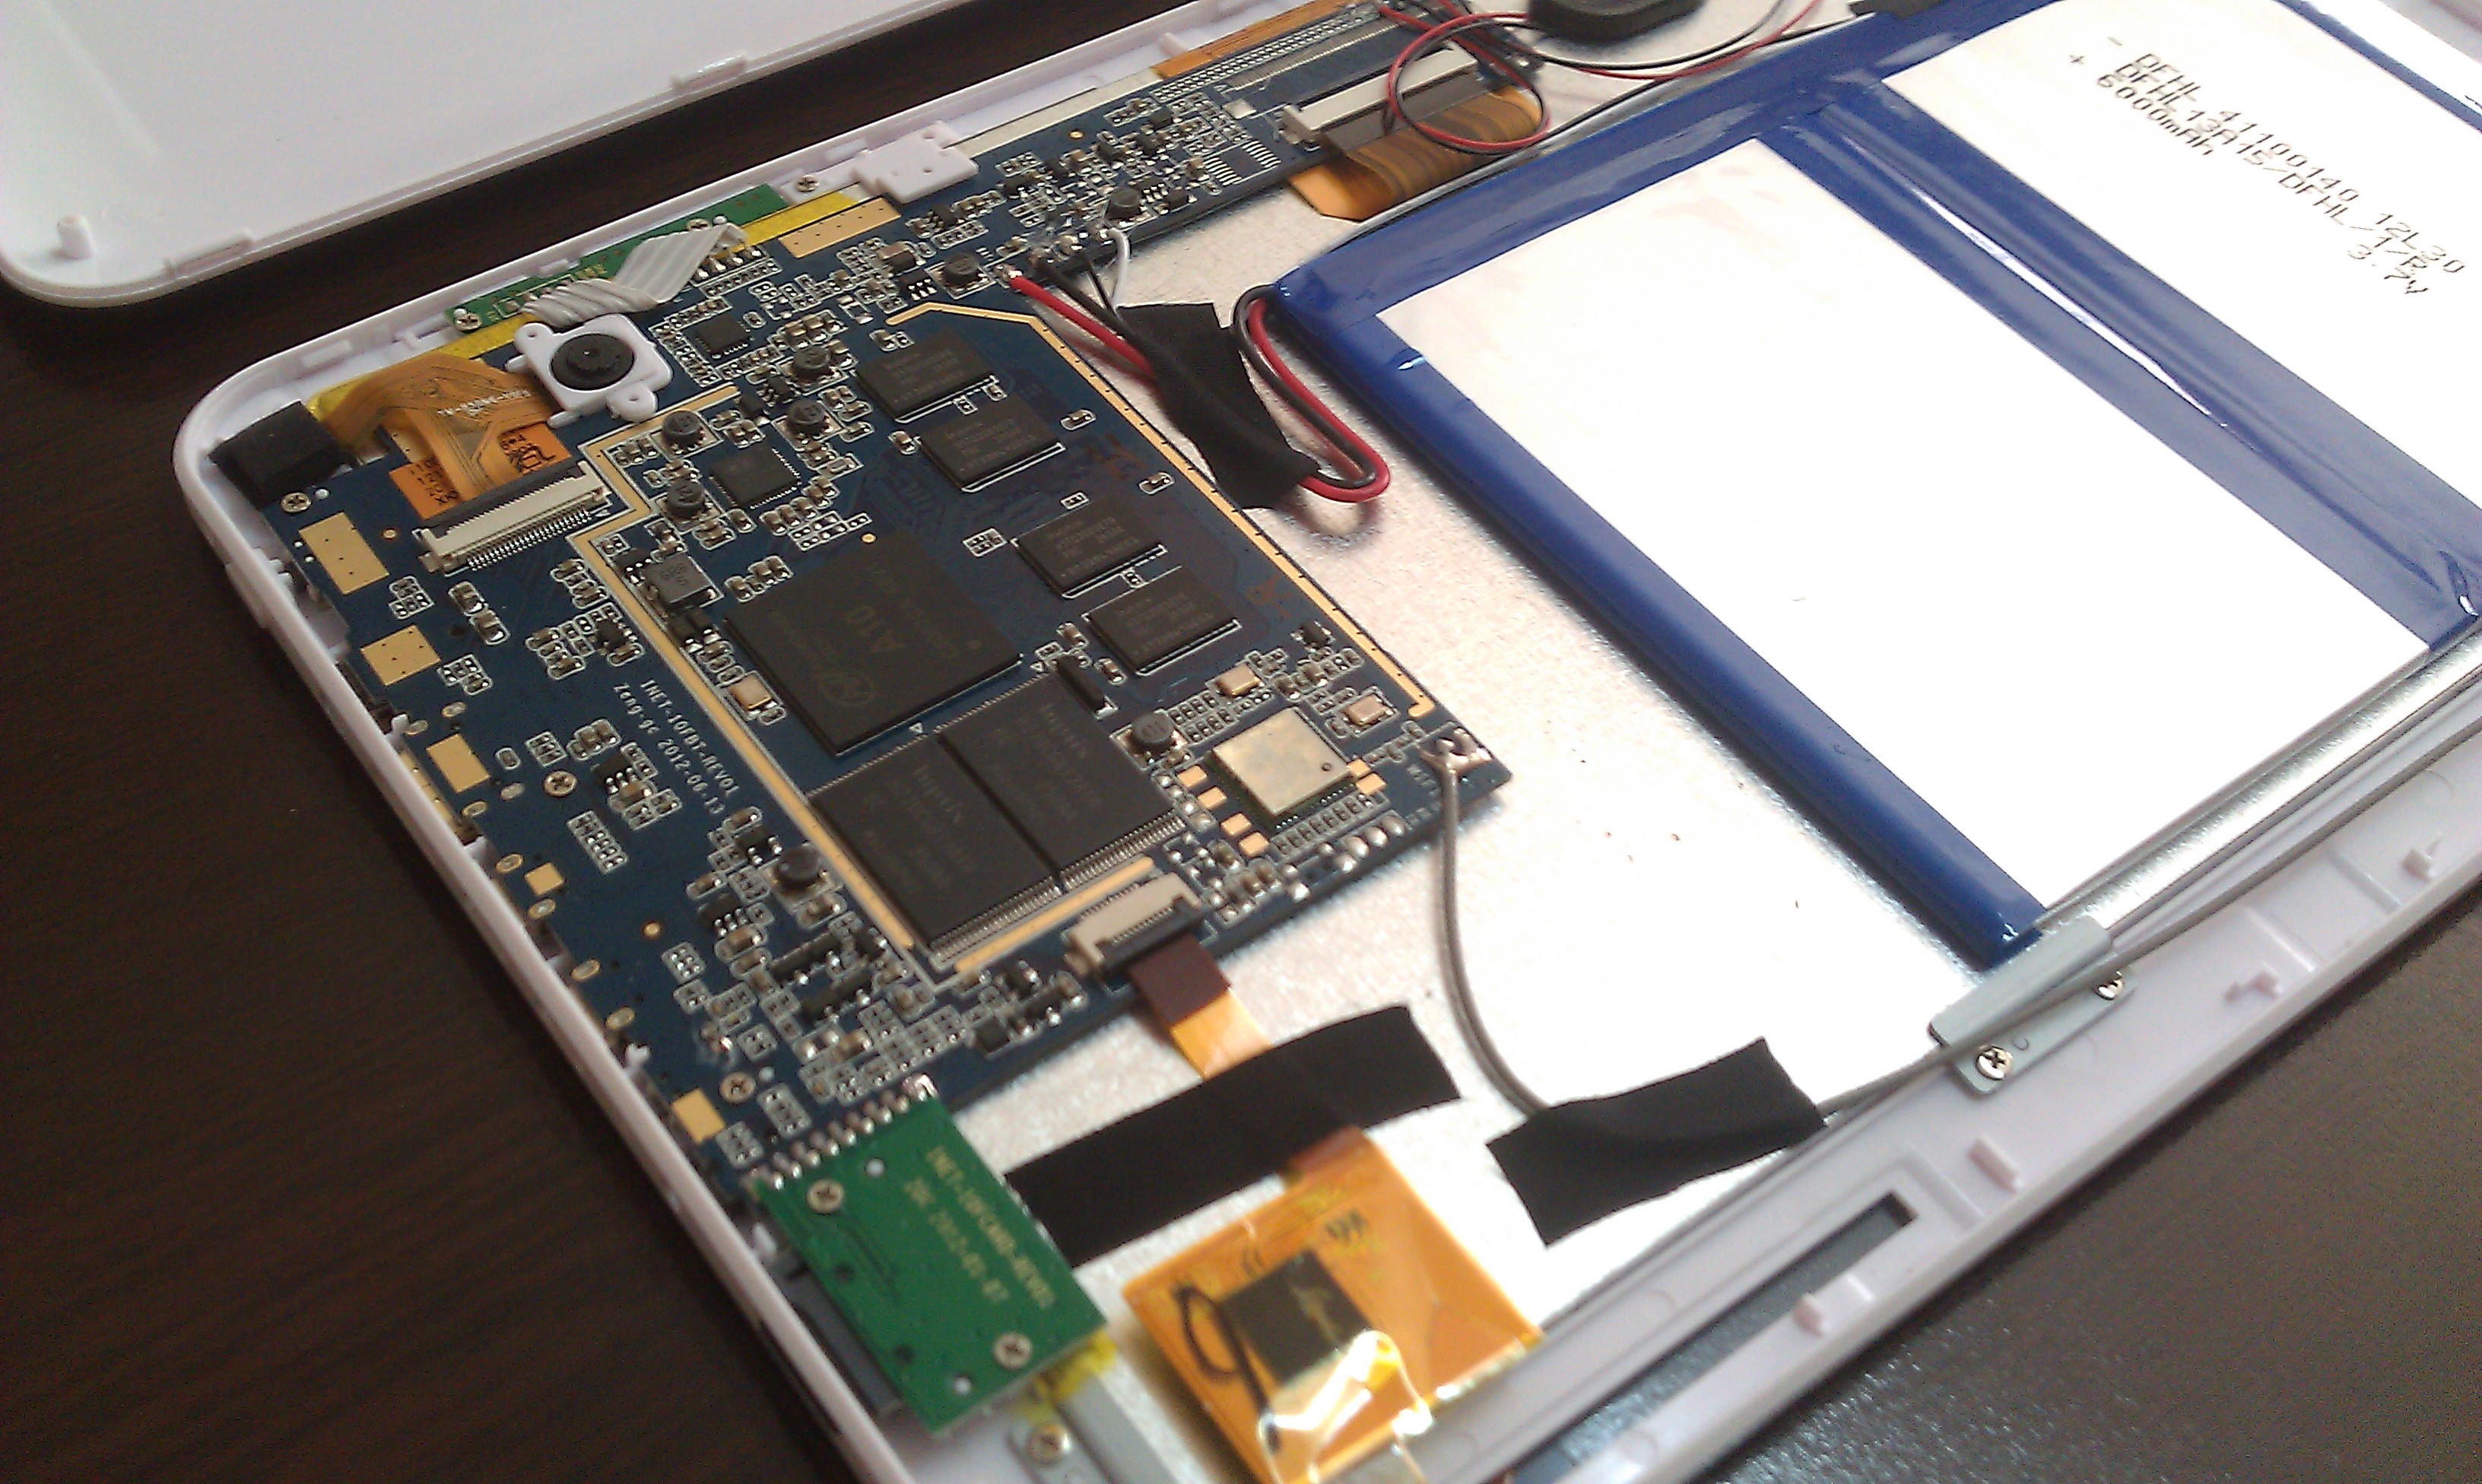  ''INCA ASTRO 10.1' RK3066 IPS TABLET'' İncelemesi (20.04.2013 Konu Güncellendi) Root Yöntemi eklendi